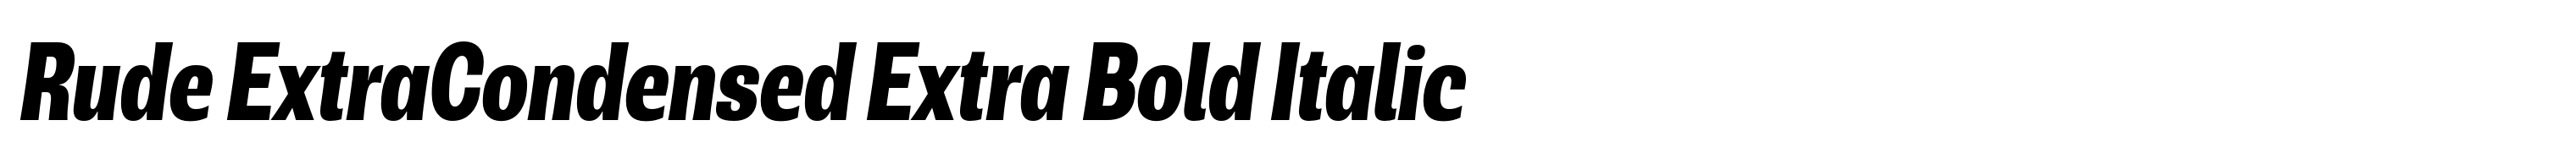 Rude ExtraCondensed Extra Bold Italic